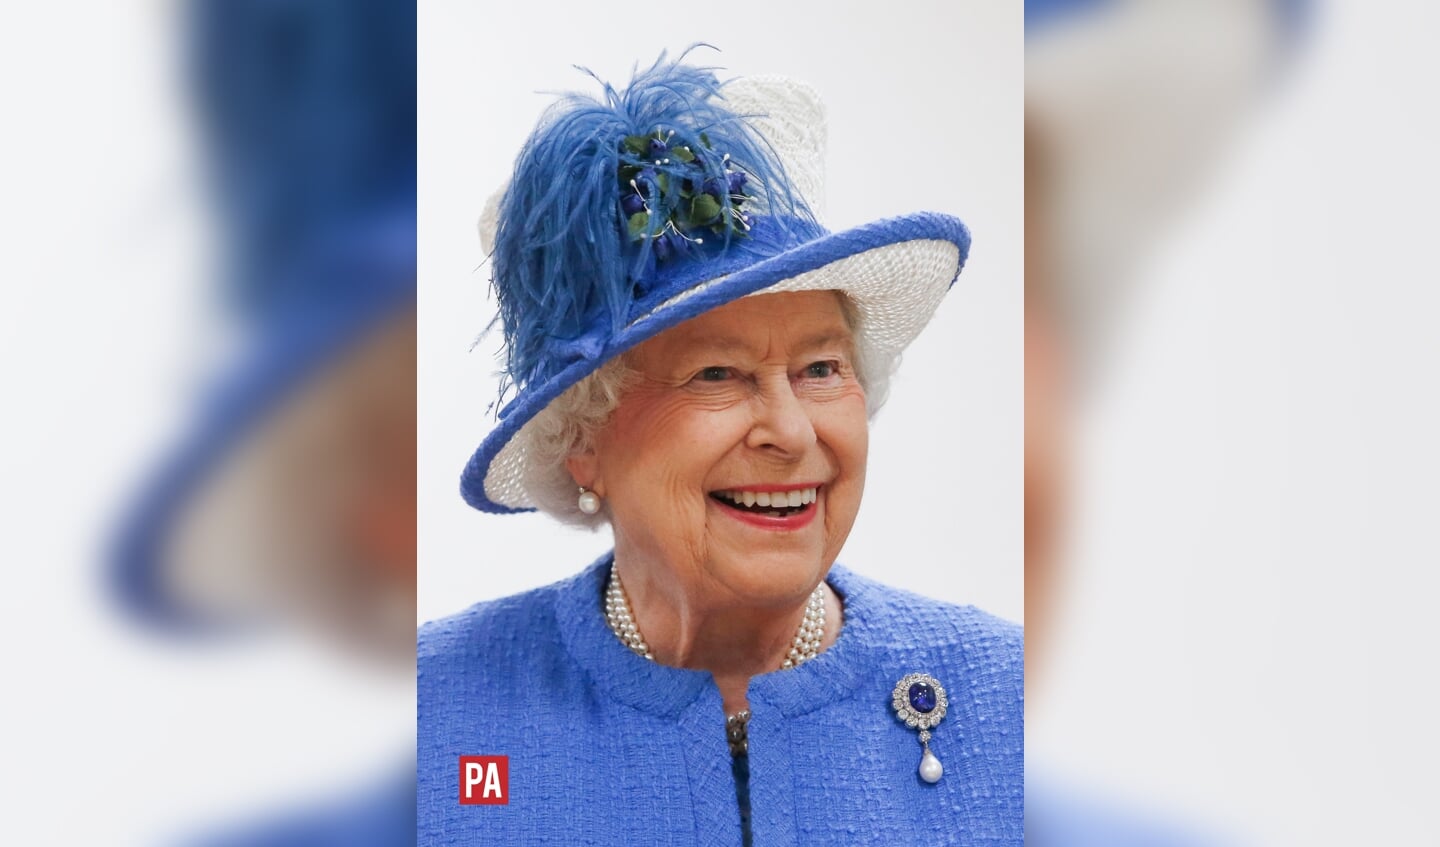 Koningin Elisabeth II is – na Koning Louis XIV, de Zonnekoning, van Frankrijk – de langst regerende Monarch ter wereld. 